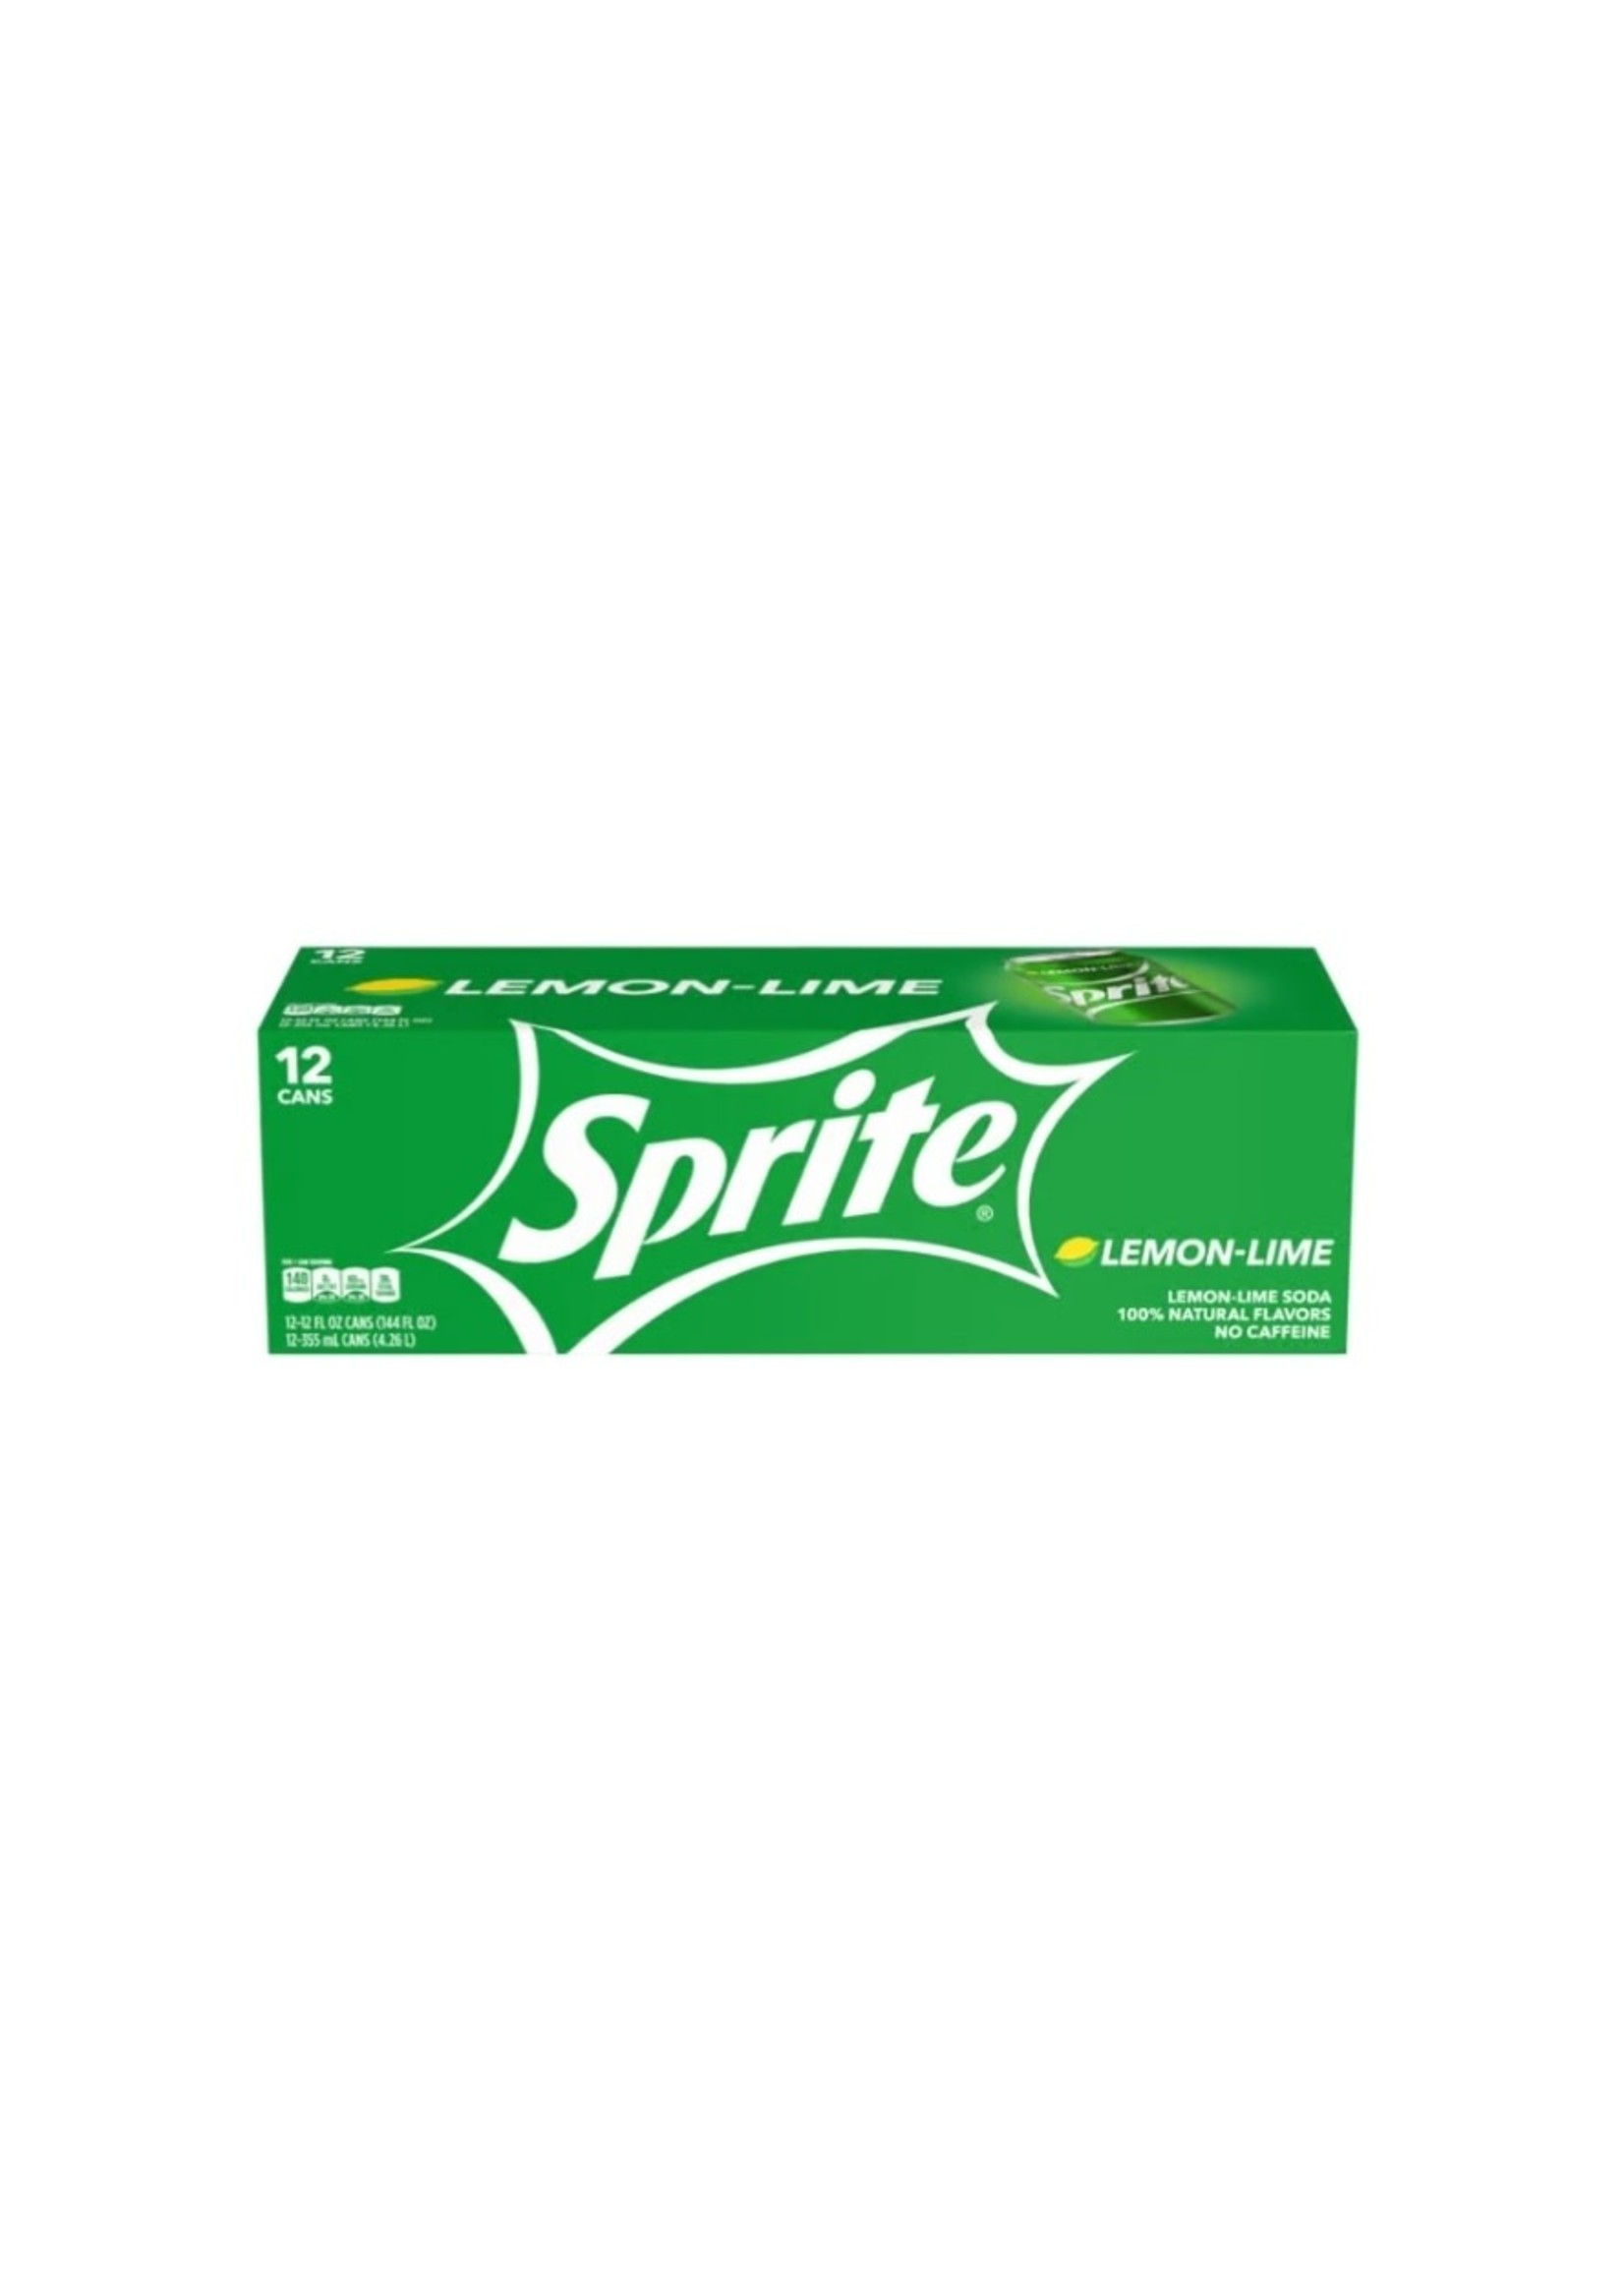 Sprite 115586 - Sprite Fridge Pack Cans, 12 fl oz, 12 Pack, 2 Sets